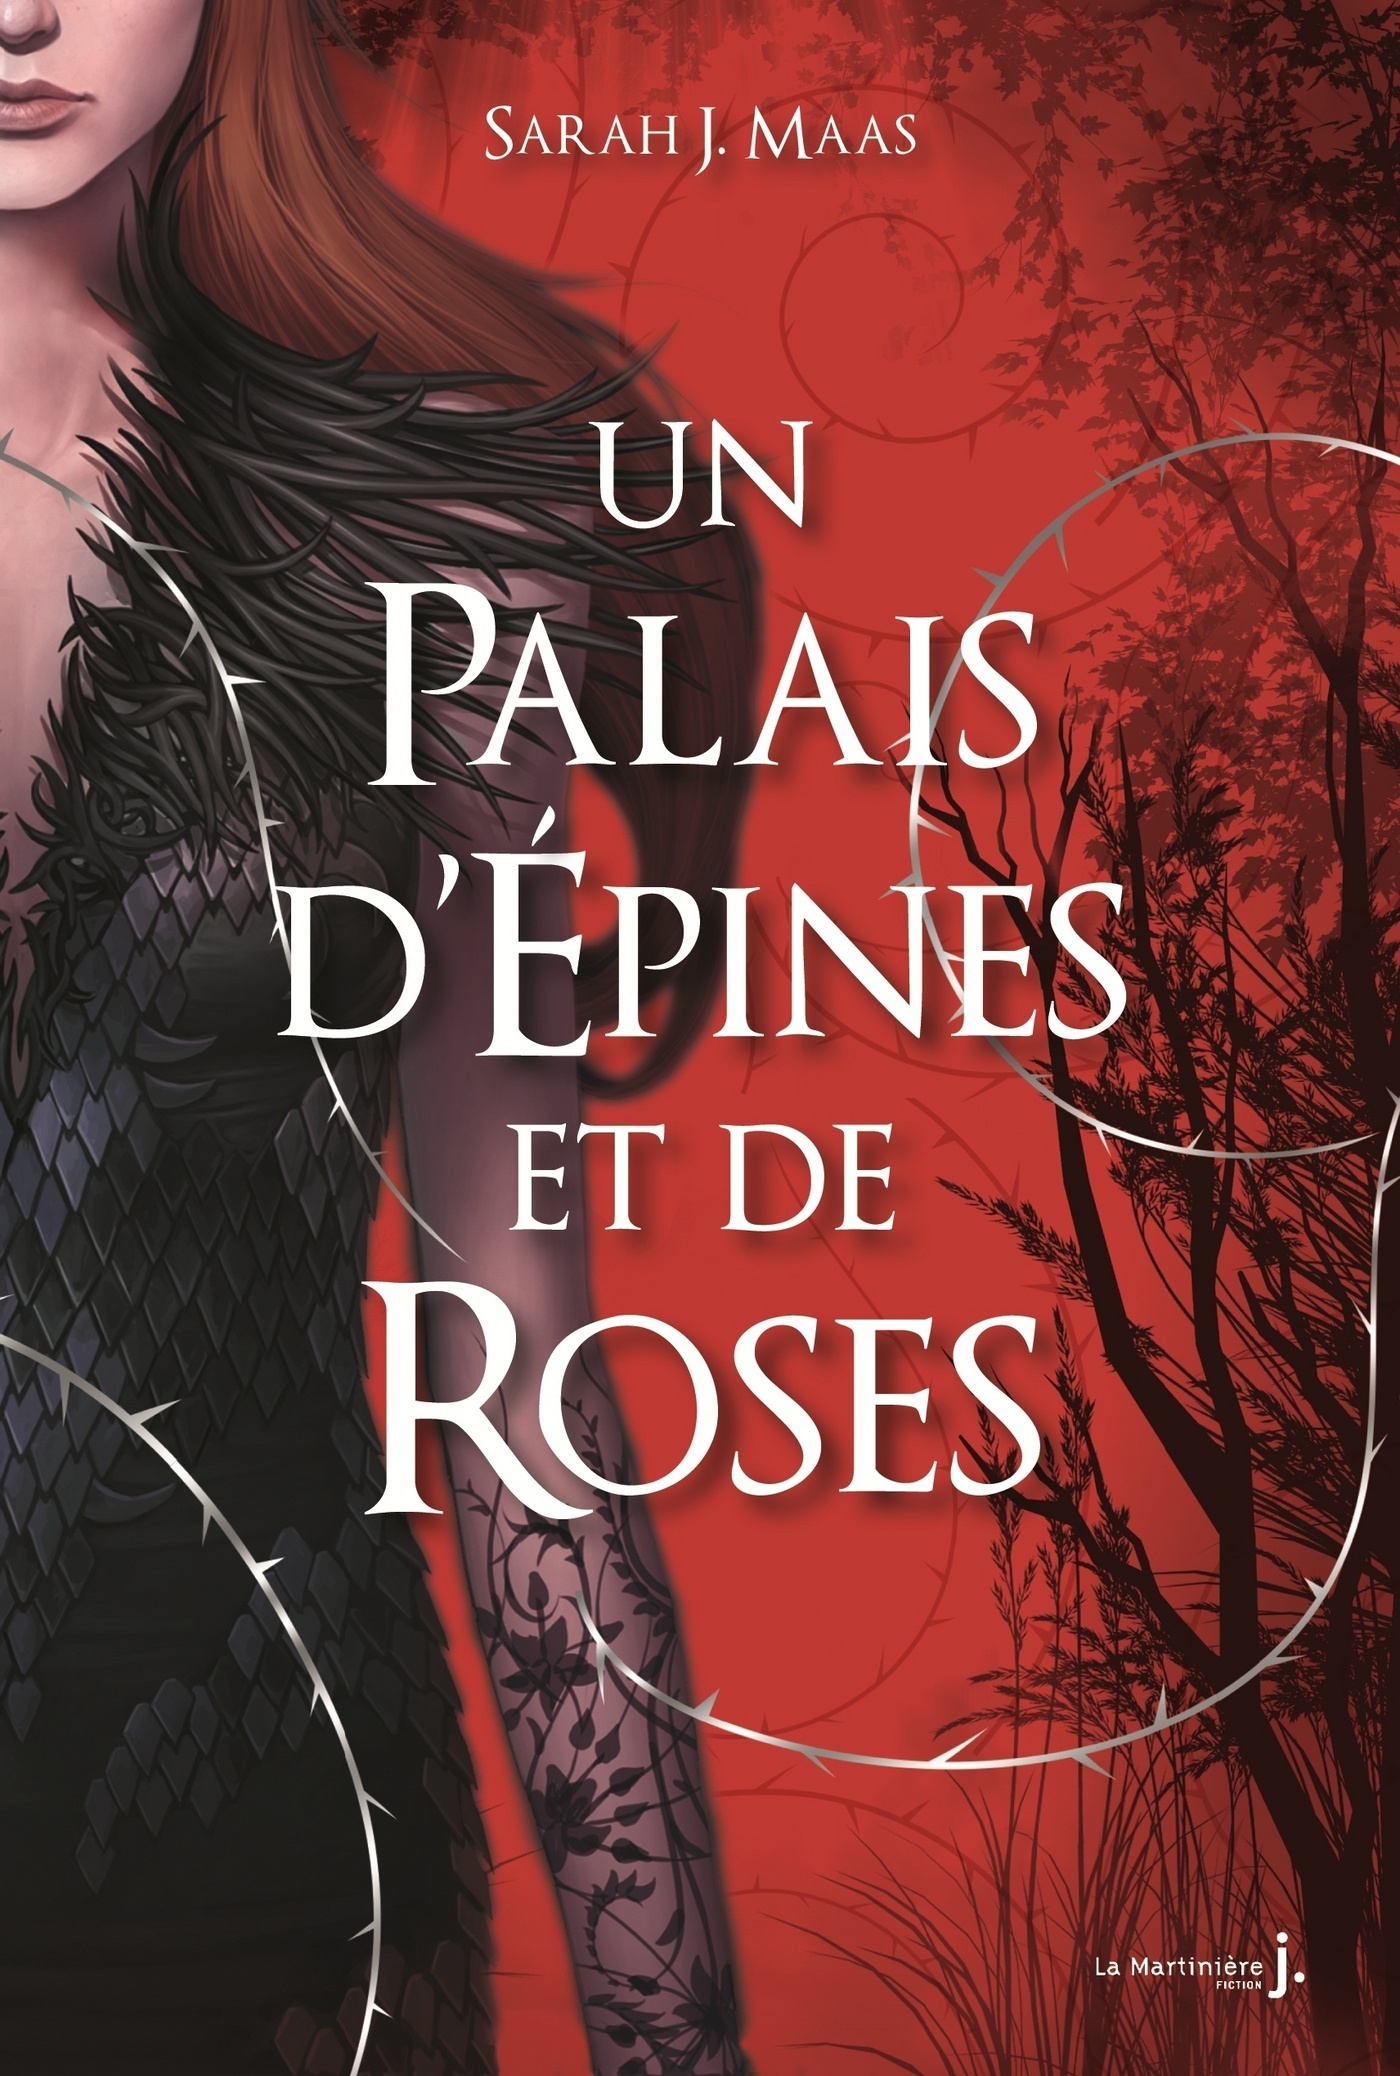 Tag aventure sur Entre 2 livres Un-palais-d-epines-et-de-roses-1406059